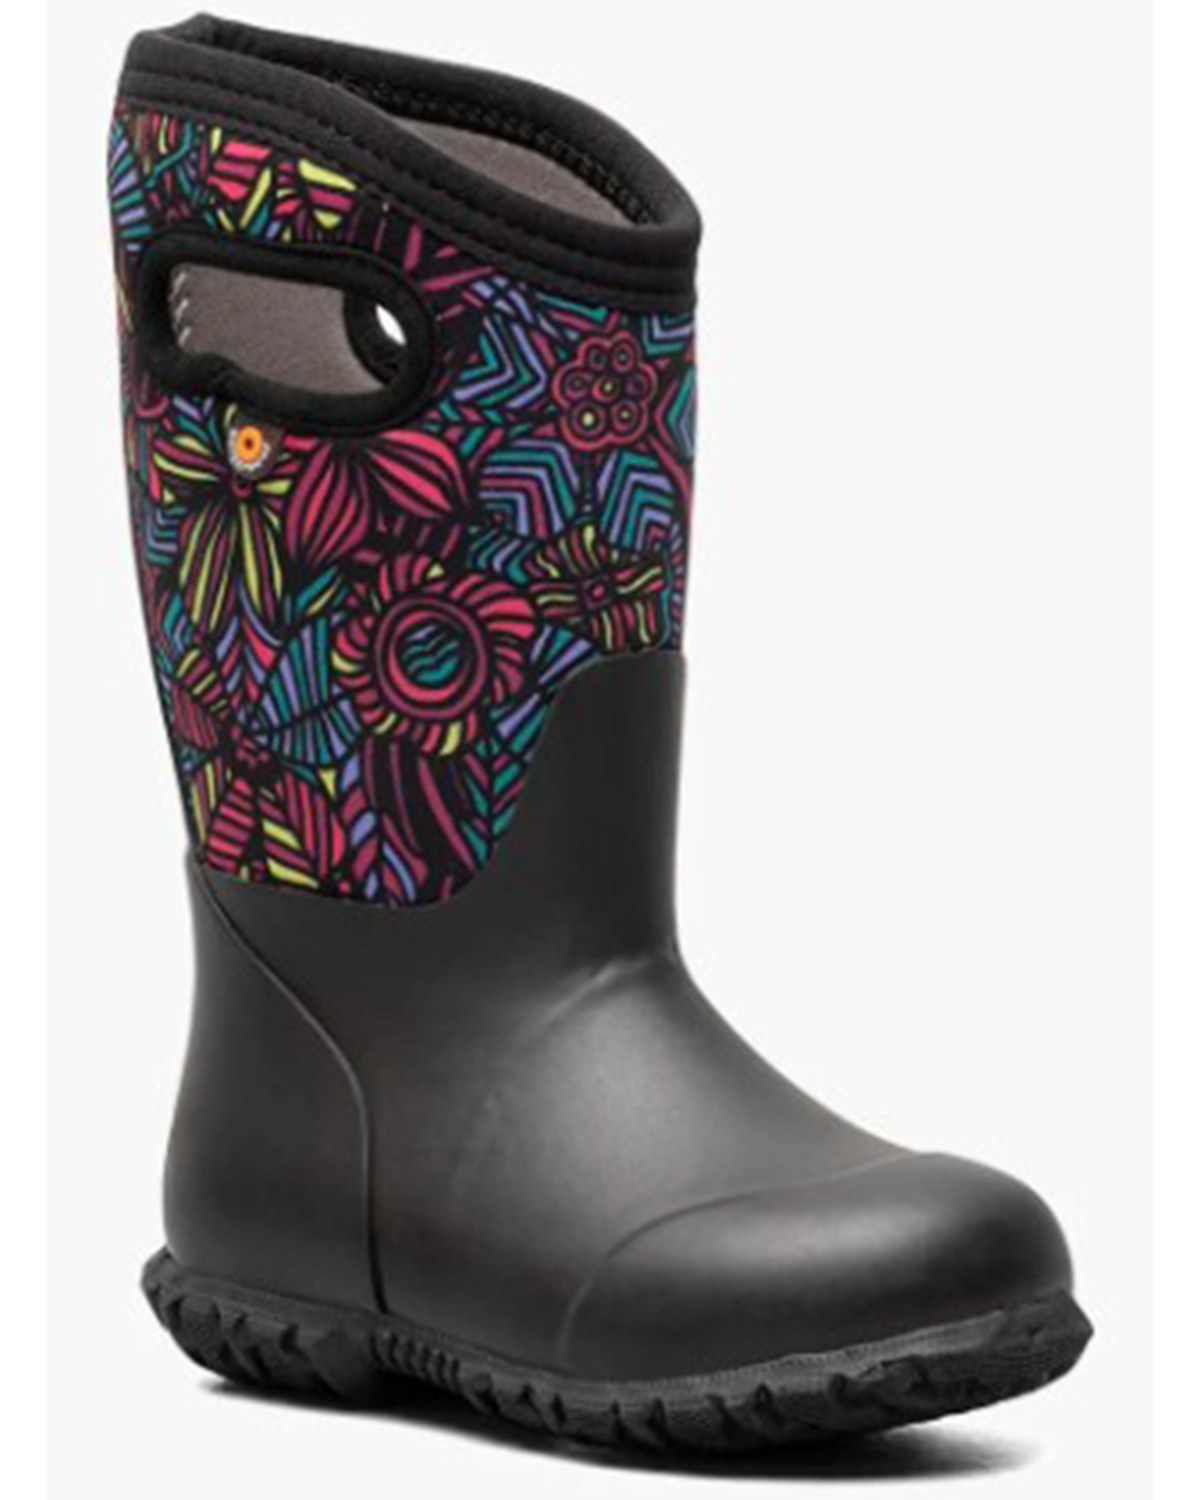 Bogs Girls' York Wild Garden Rain Boots - Round Toe